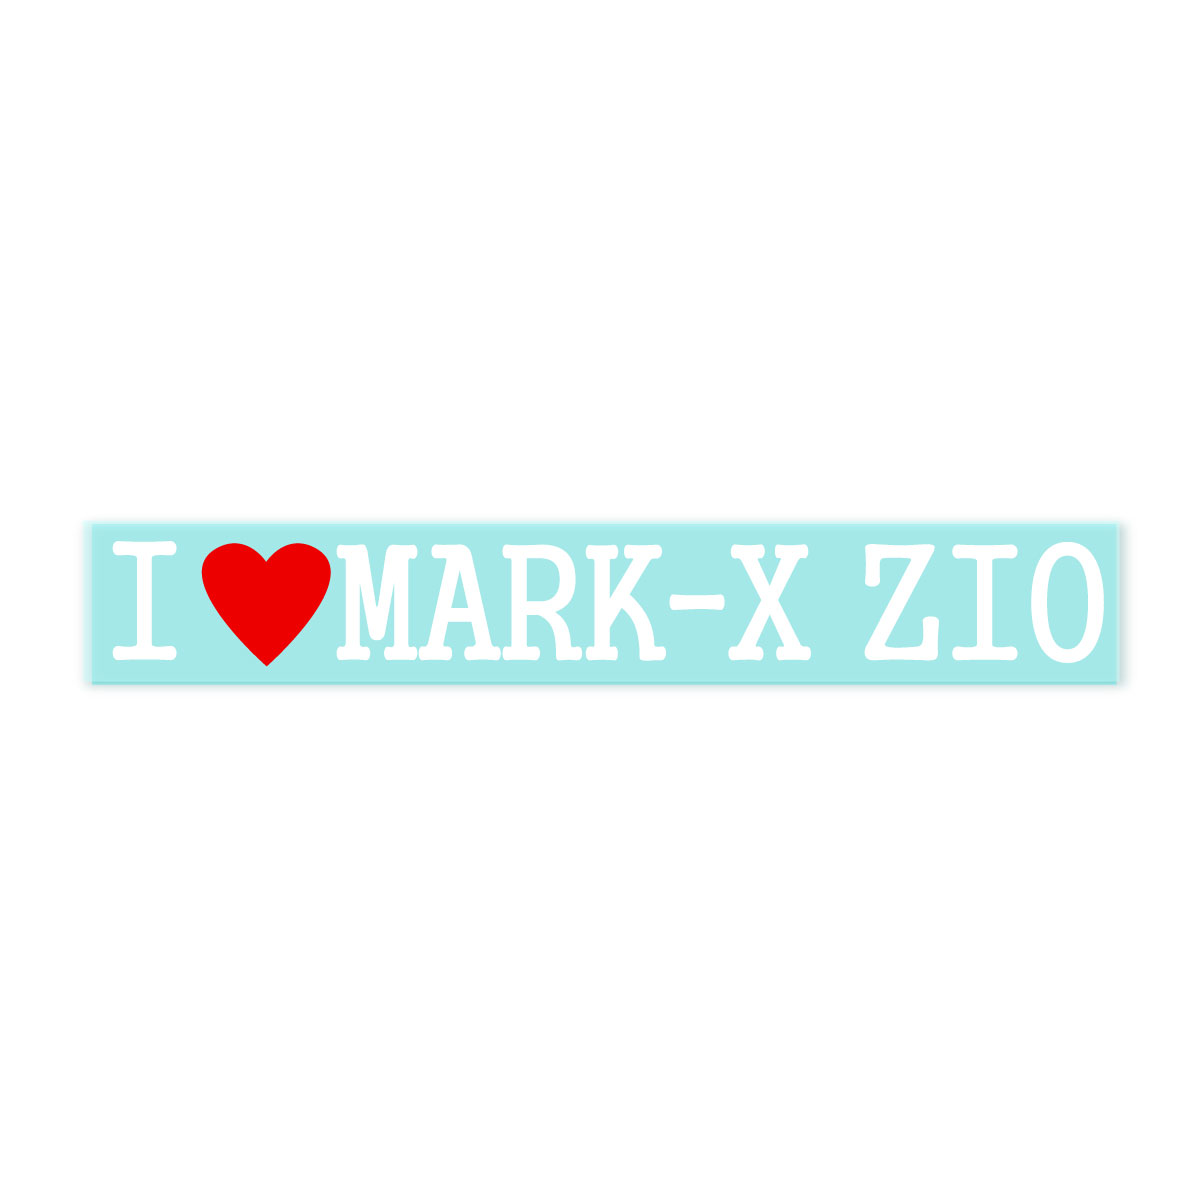 【Fproducts】アイラブステッカー/MARK-X ZIO/アイラブ マークXジオ【ポイント消化】